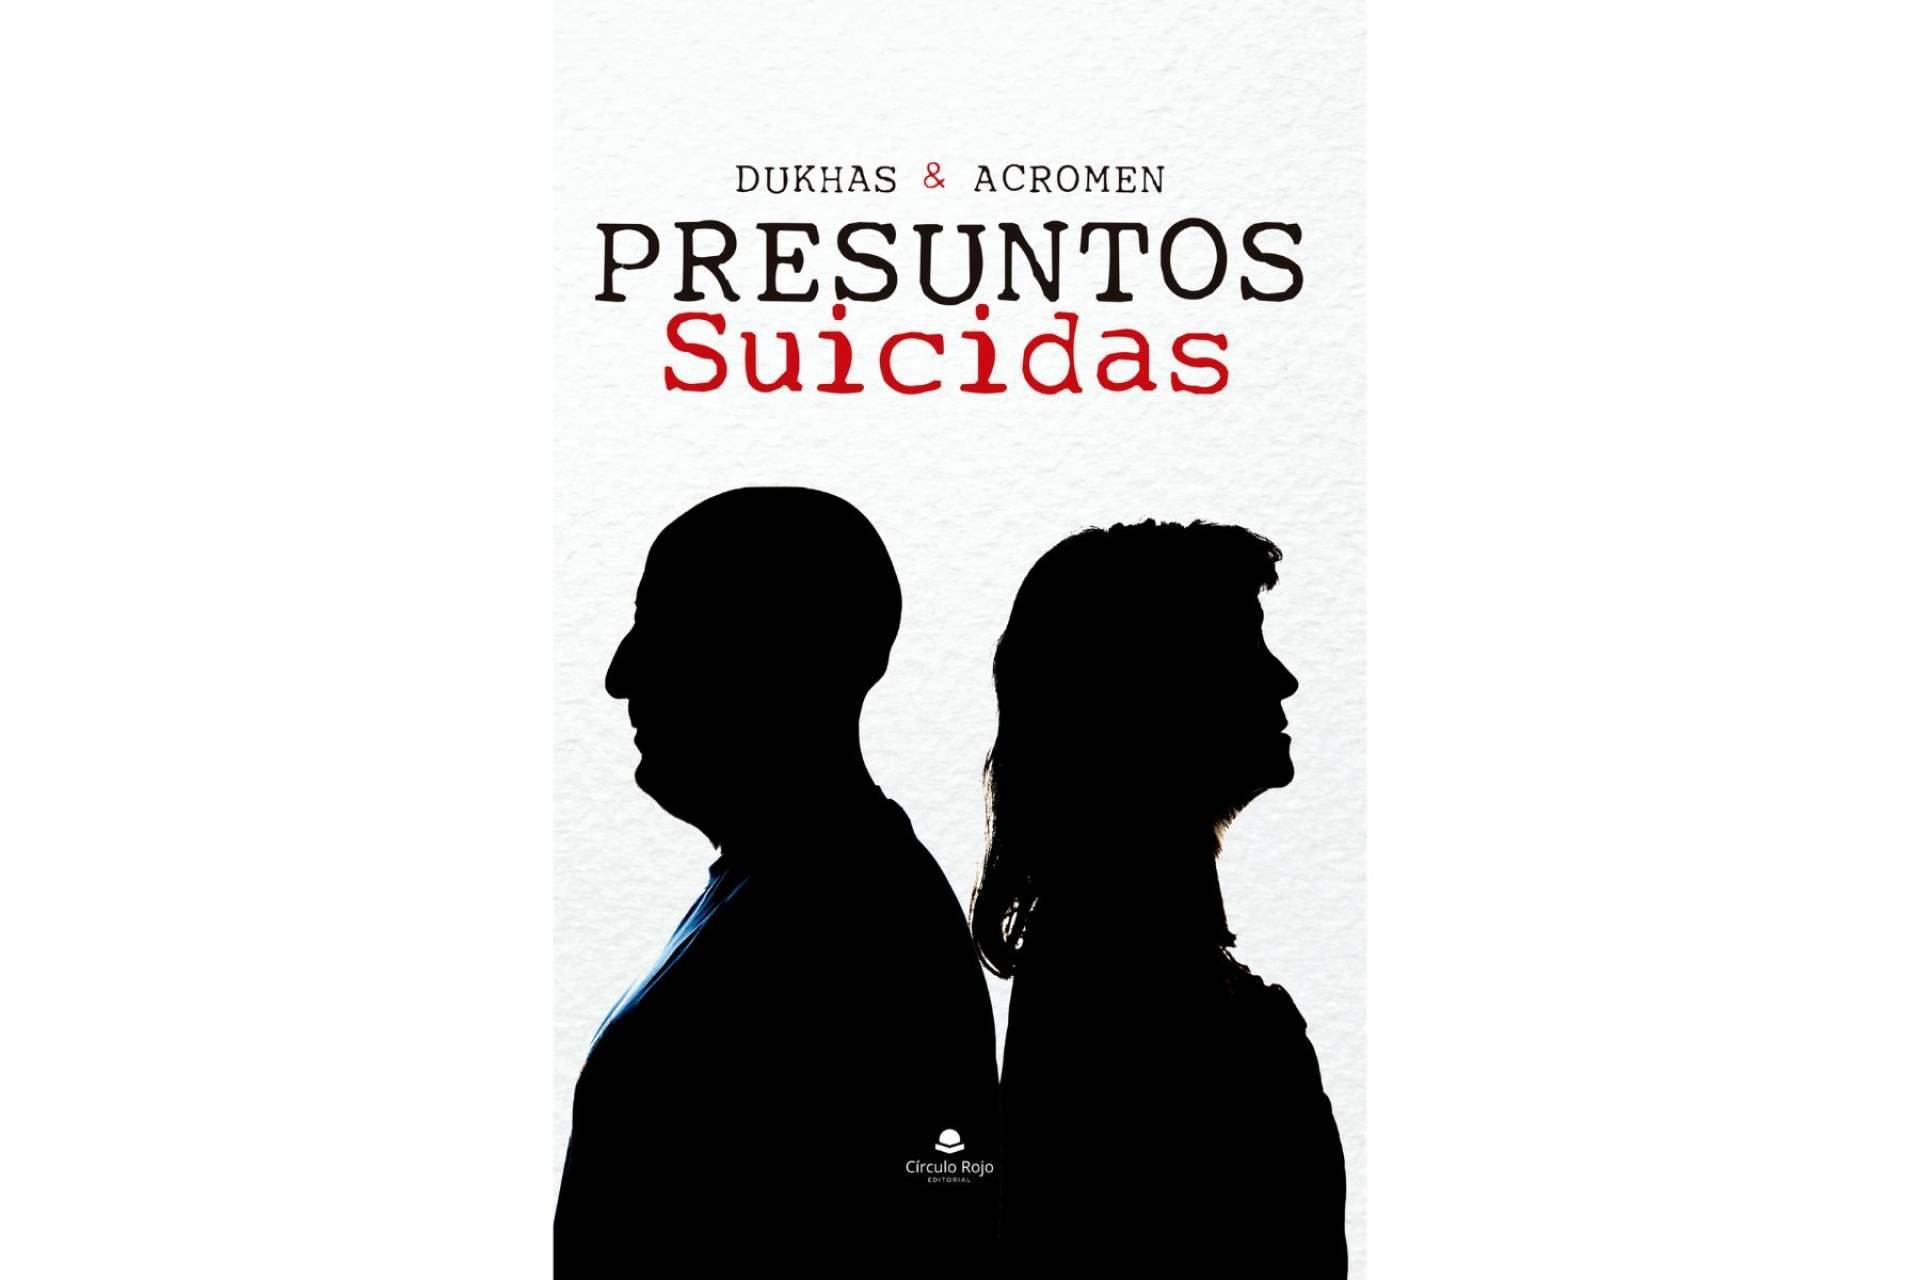  Dukhas y Acromen relatan sus experiencias con el suicidio y hablan para que nunca tenga que estar nadie más en silencio, en su obra 'Presuntos suicidas' 